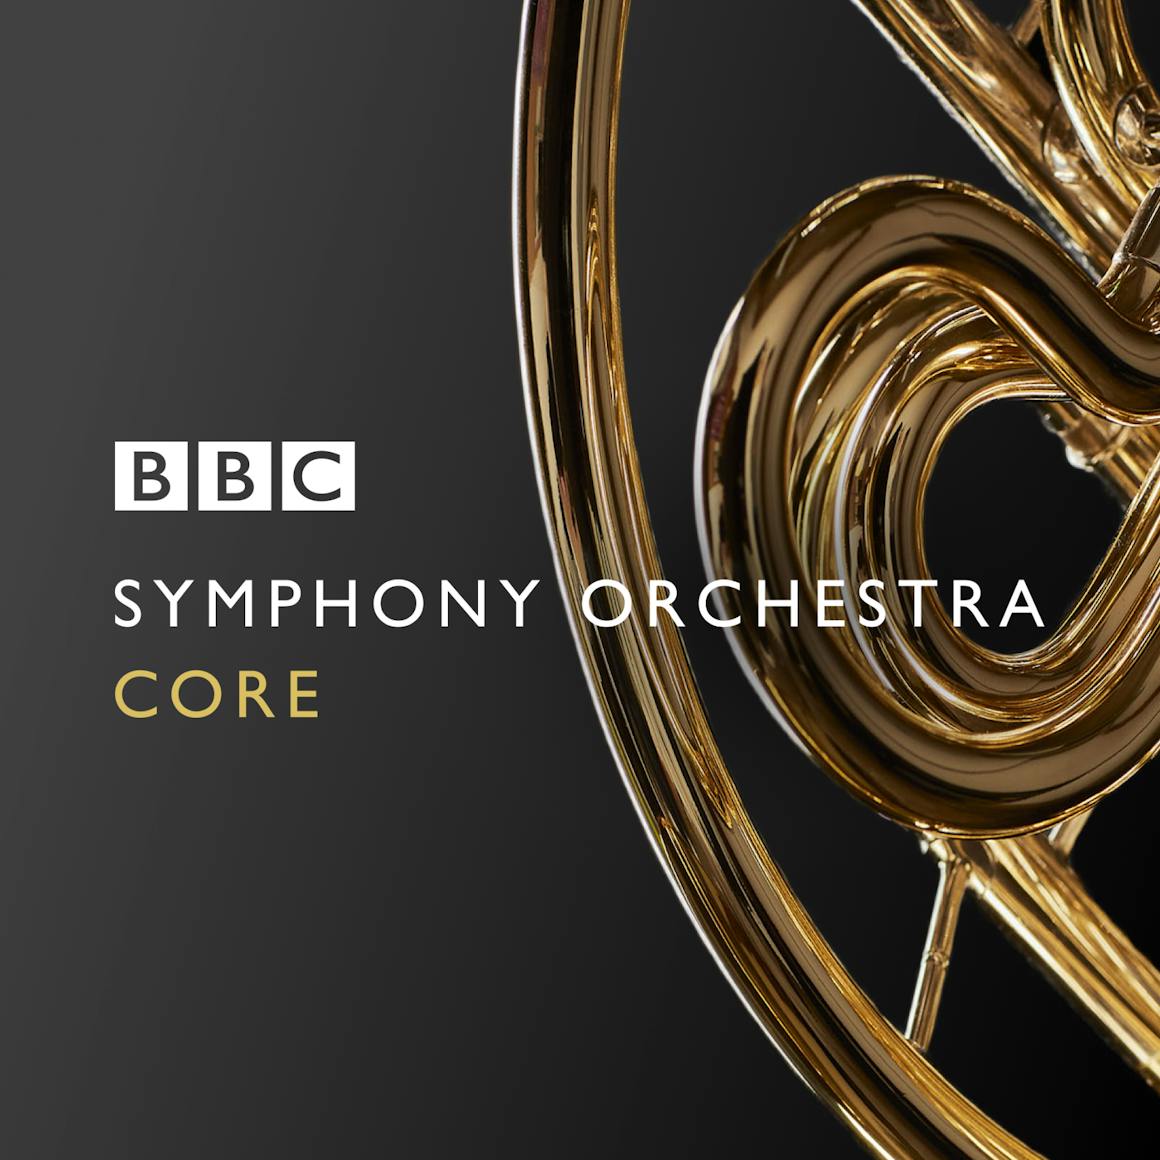 BBC Symphony Orchestra — Spitfire Audio